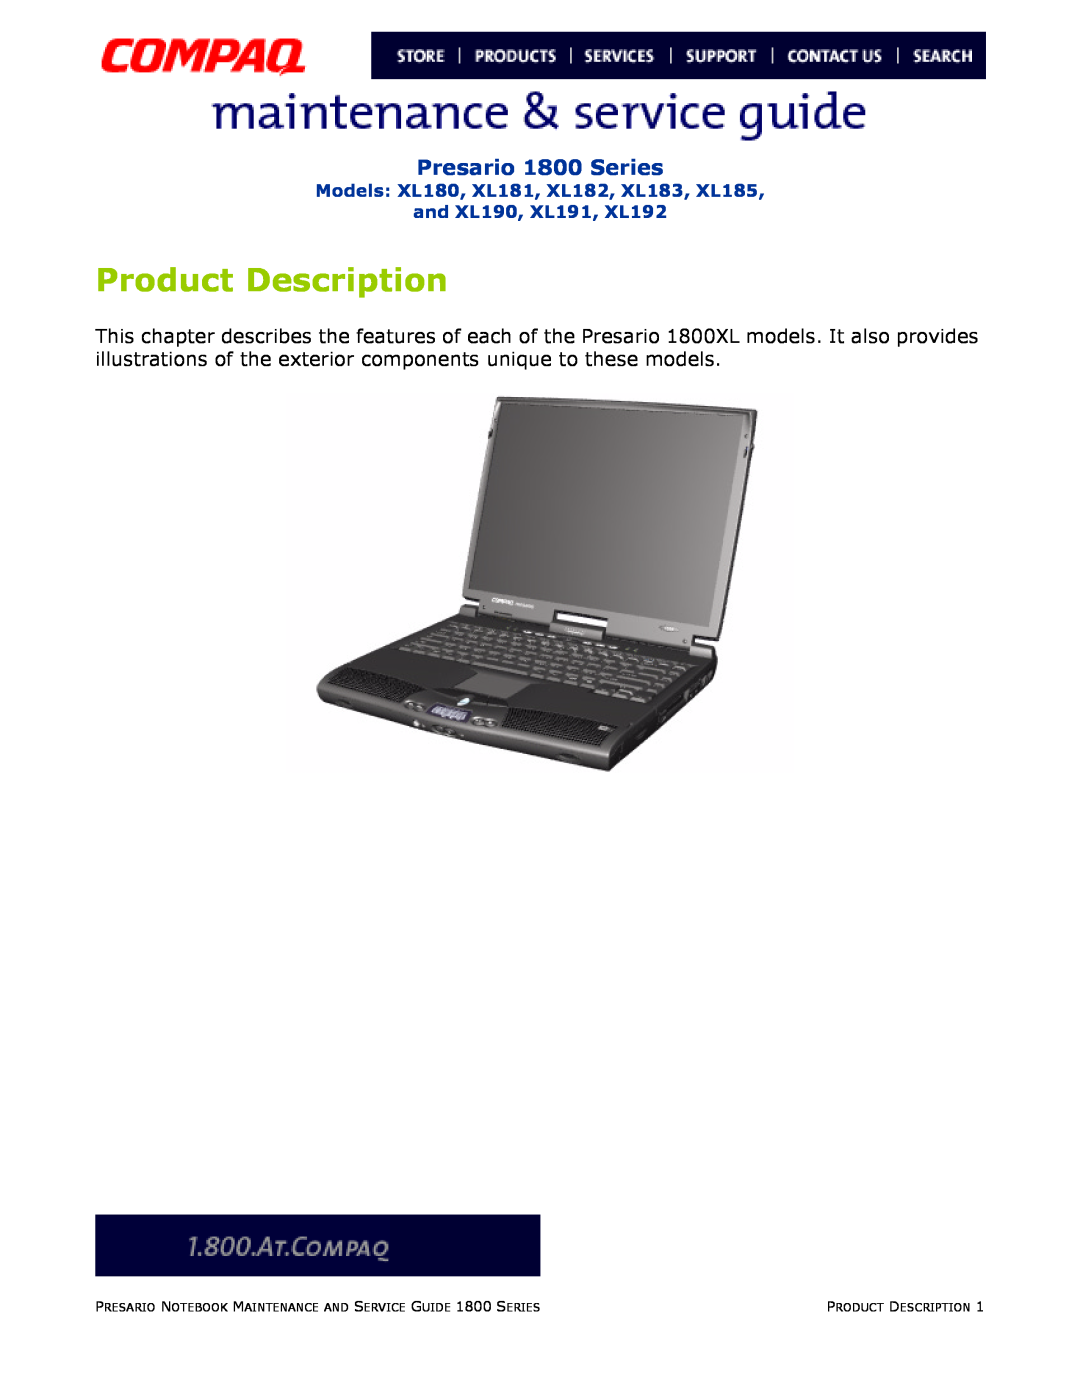 Compaq Product Description, Presario 1800 Series, Models XL180, XL181, XL182, XL183, XL185 and XL190, XL191, XL192 